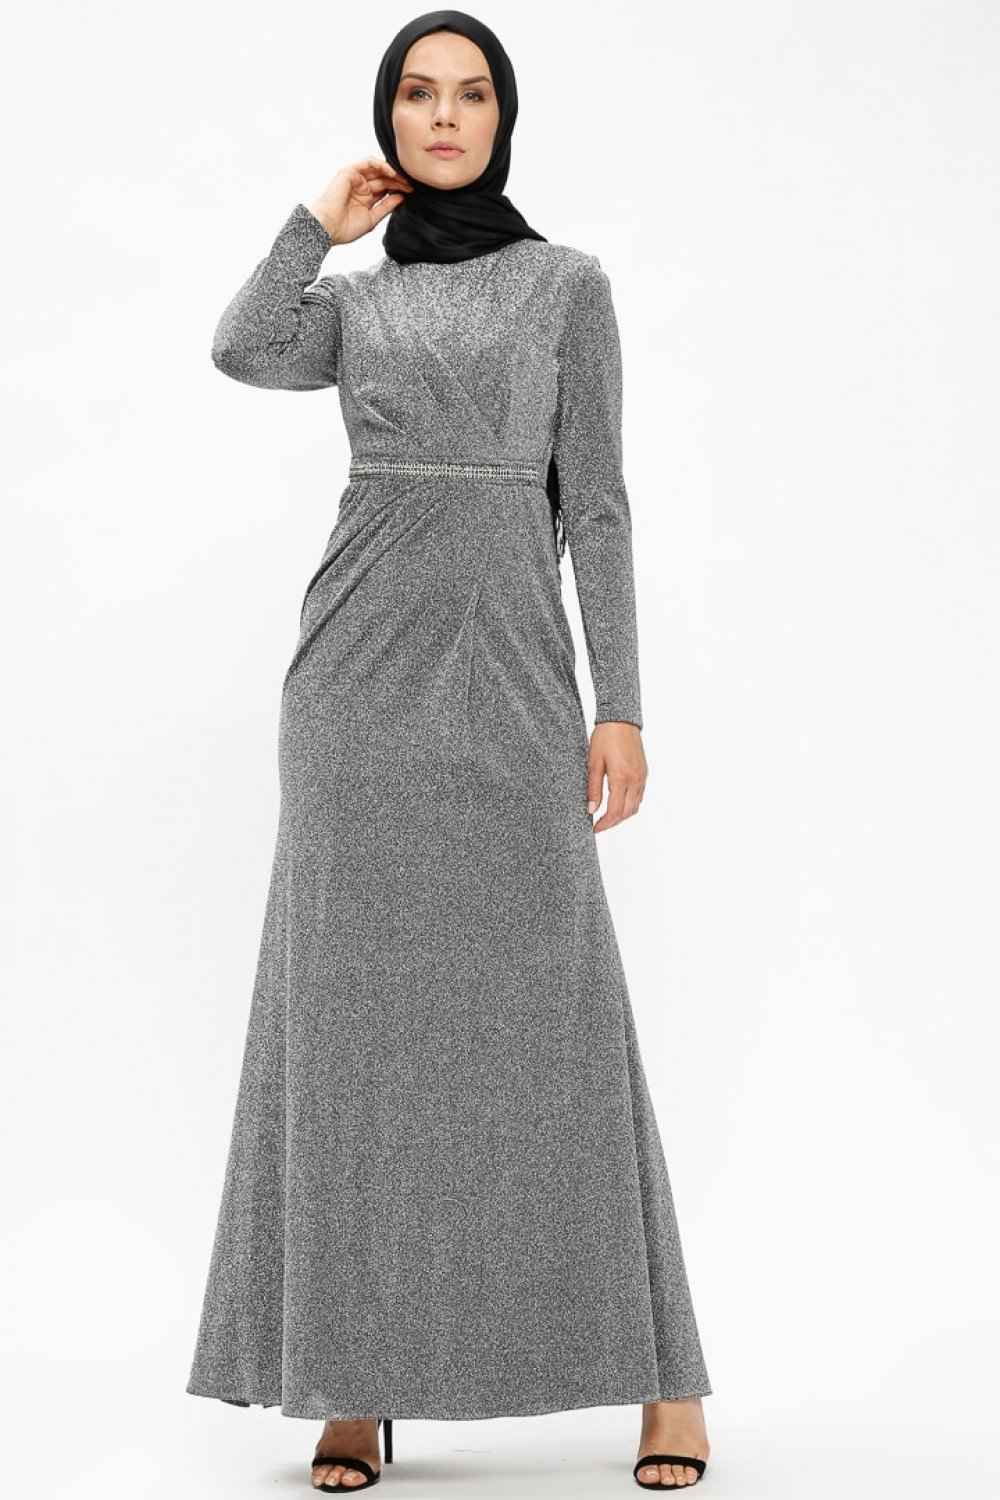 En Güzel Tesettür Puane Simli Abiye Elbise Modelleri